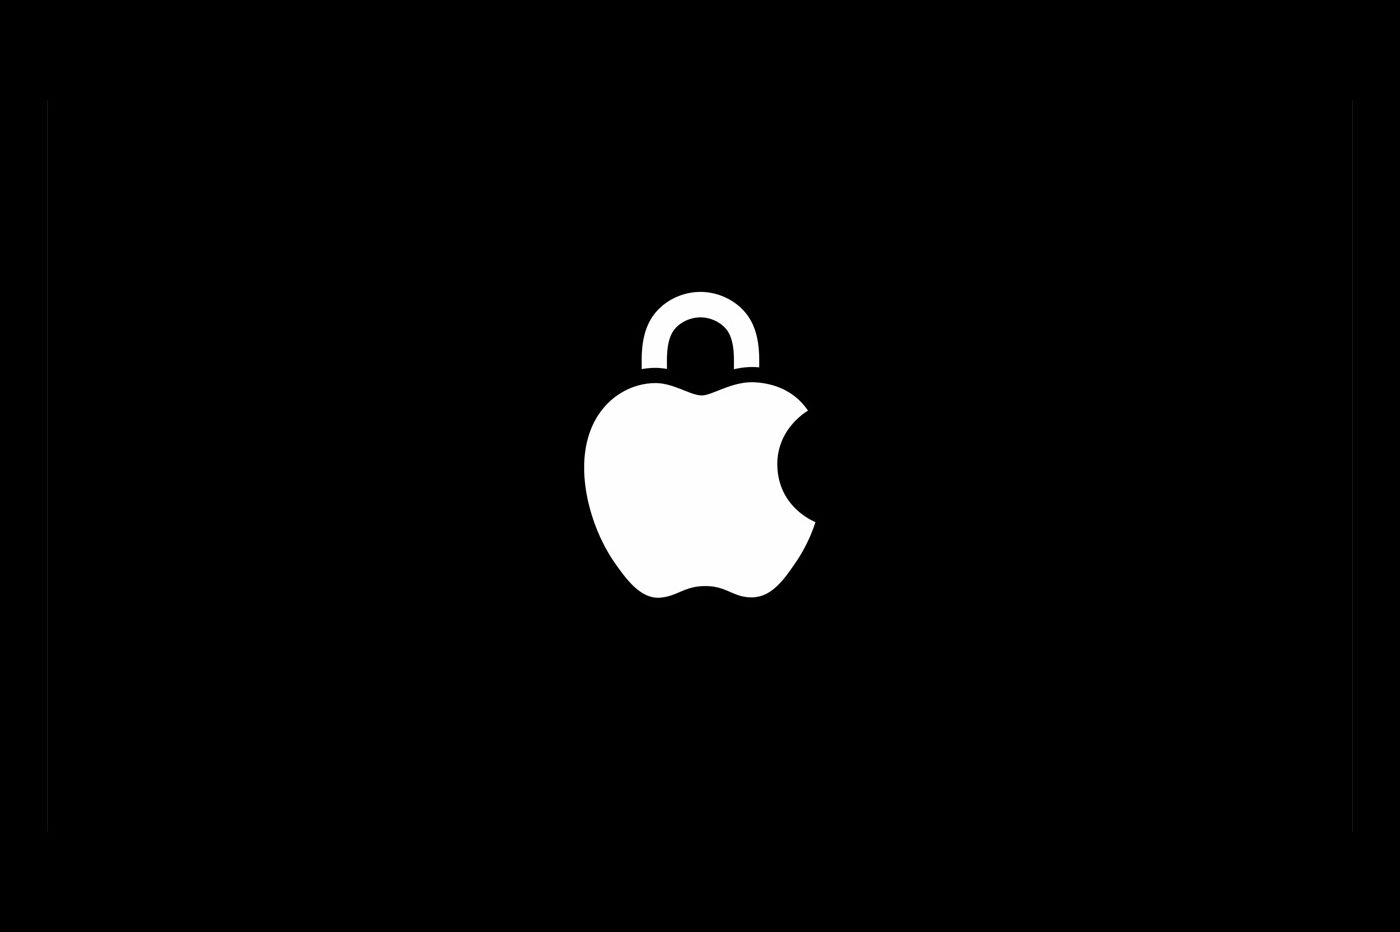 Vol de données personnelles : cette étude d'Apple tire la sonnette d'alarme